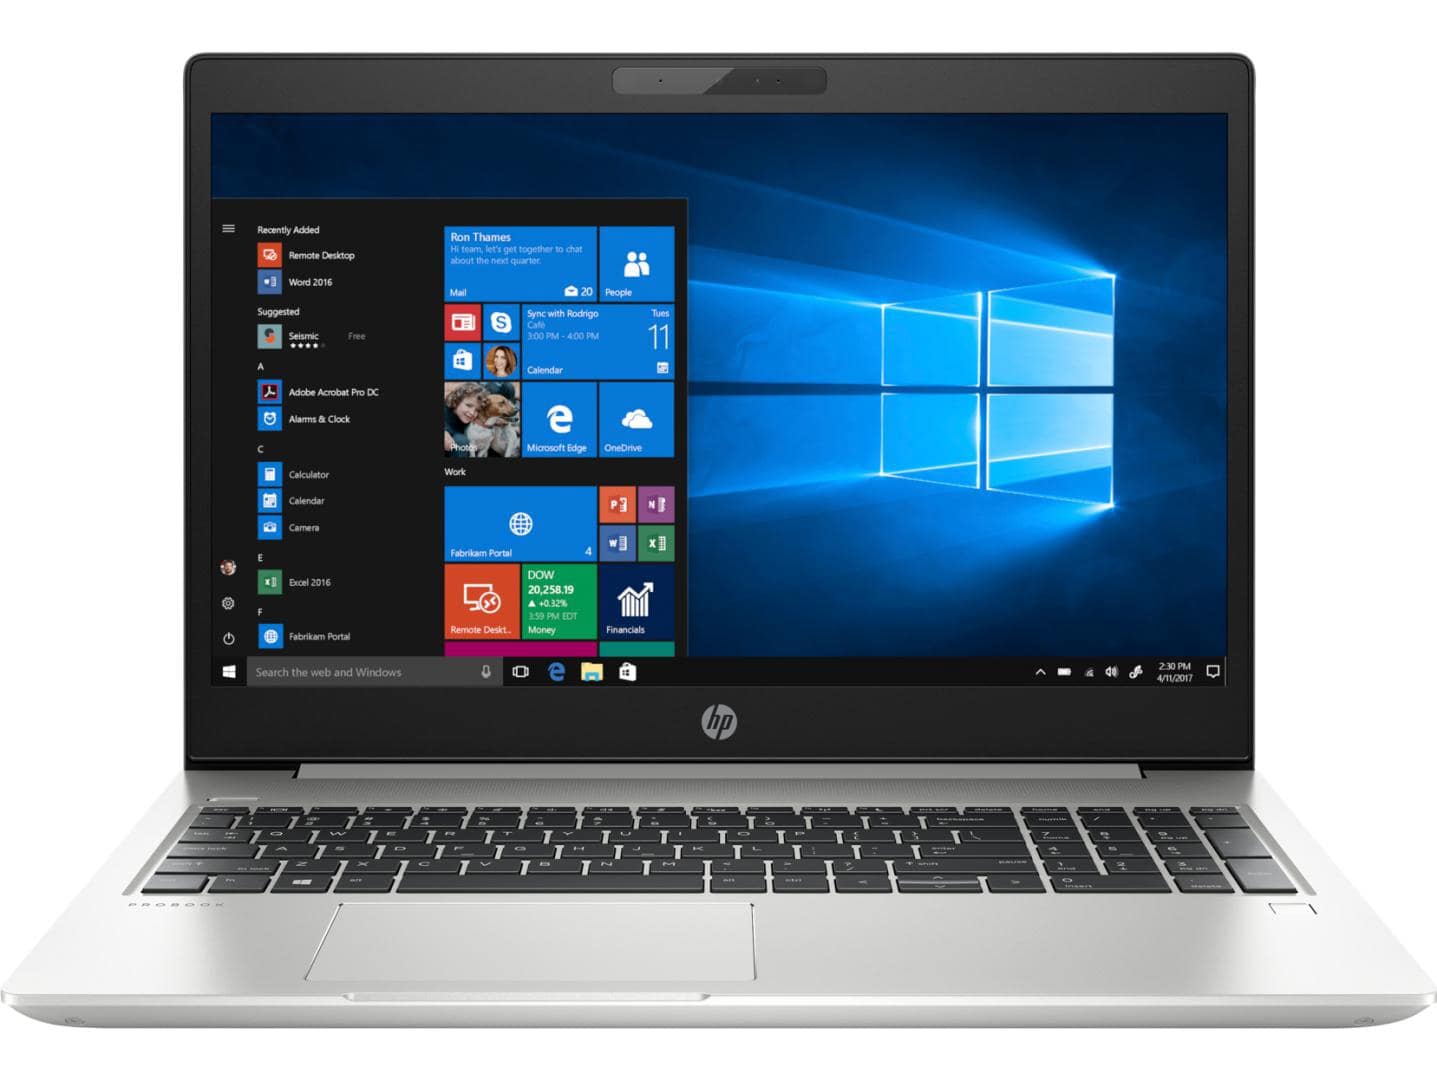 Laptop HP ProBook 450 G6, 15.6" LED FHD Anti-Glare, i7-8565U, NVIDIA GeForce MX130 2GB DDR5, RAM 16GB, SSD 512GB, Windows 10 PRO 64bit